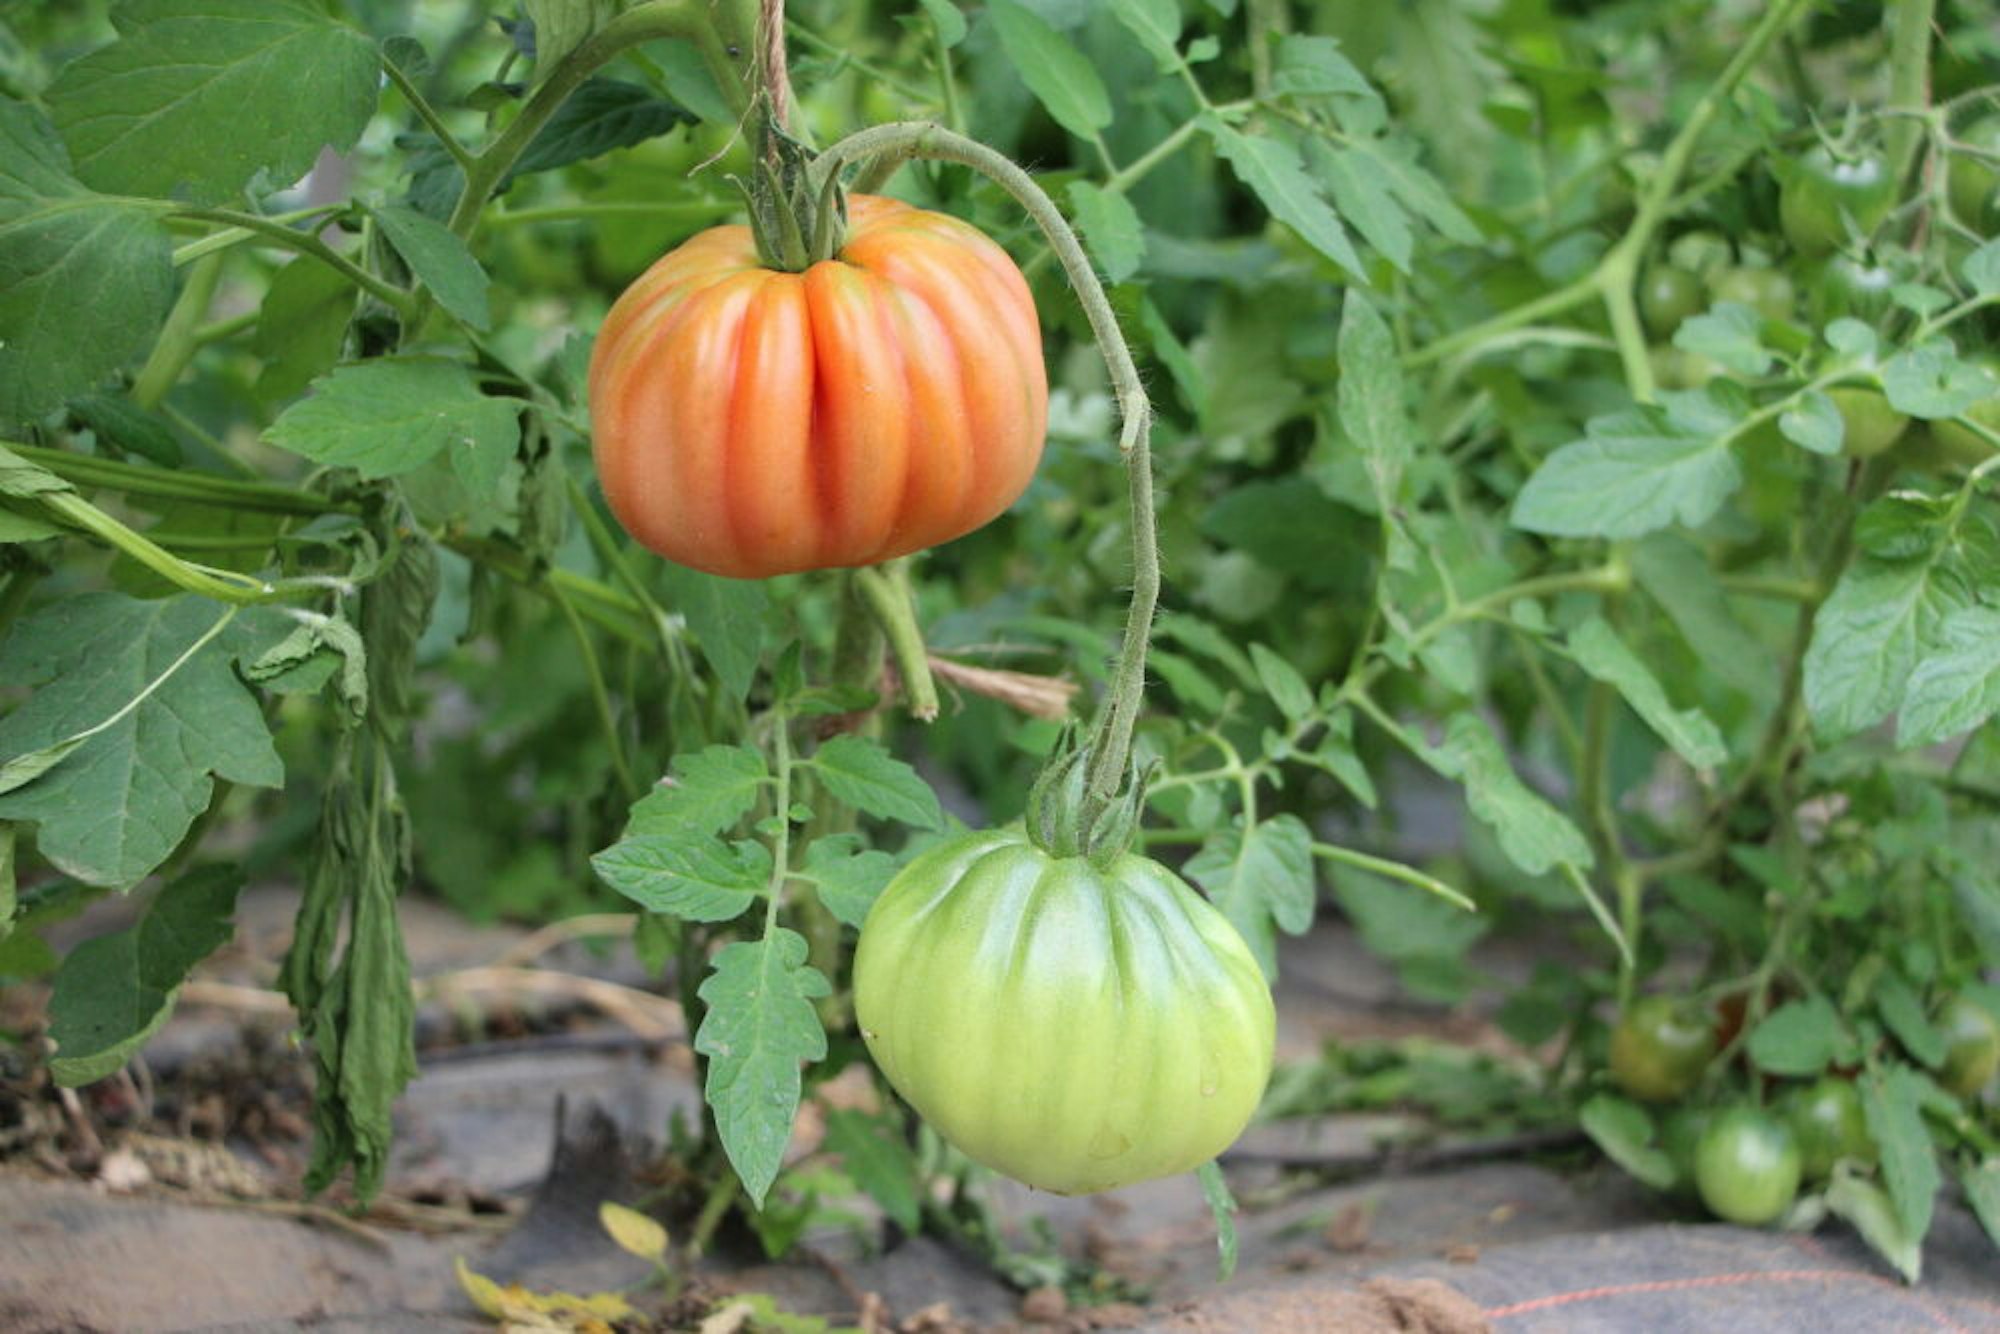 Zum Angebot gehören diverse Gemüsesorten, darunter verschiedene Tomaten und Gurken.